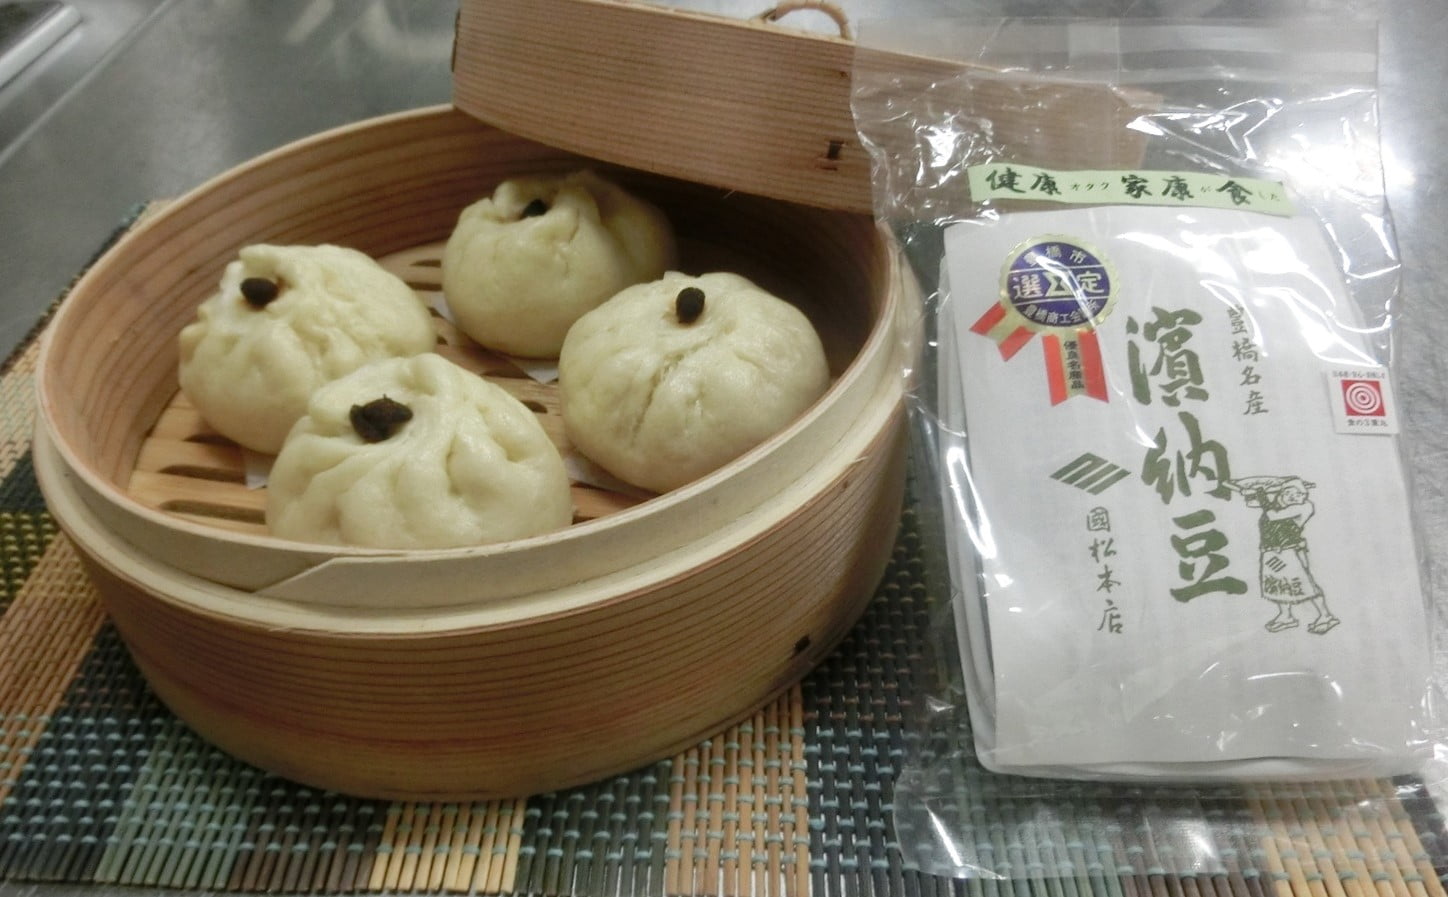 愛知県の食材で古代の味を現代に再現！
濱納豆を使用した三国志肉まん画像